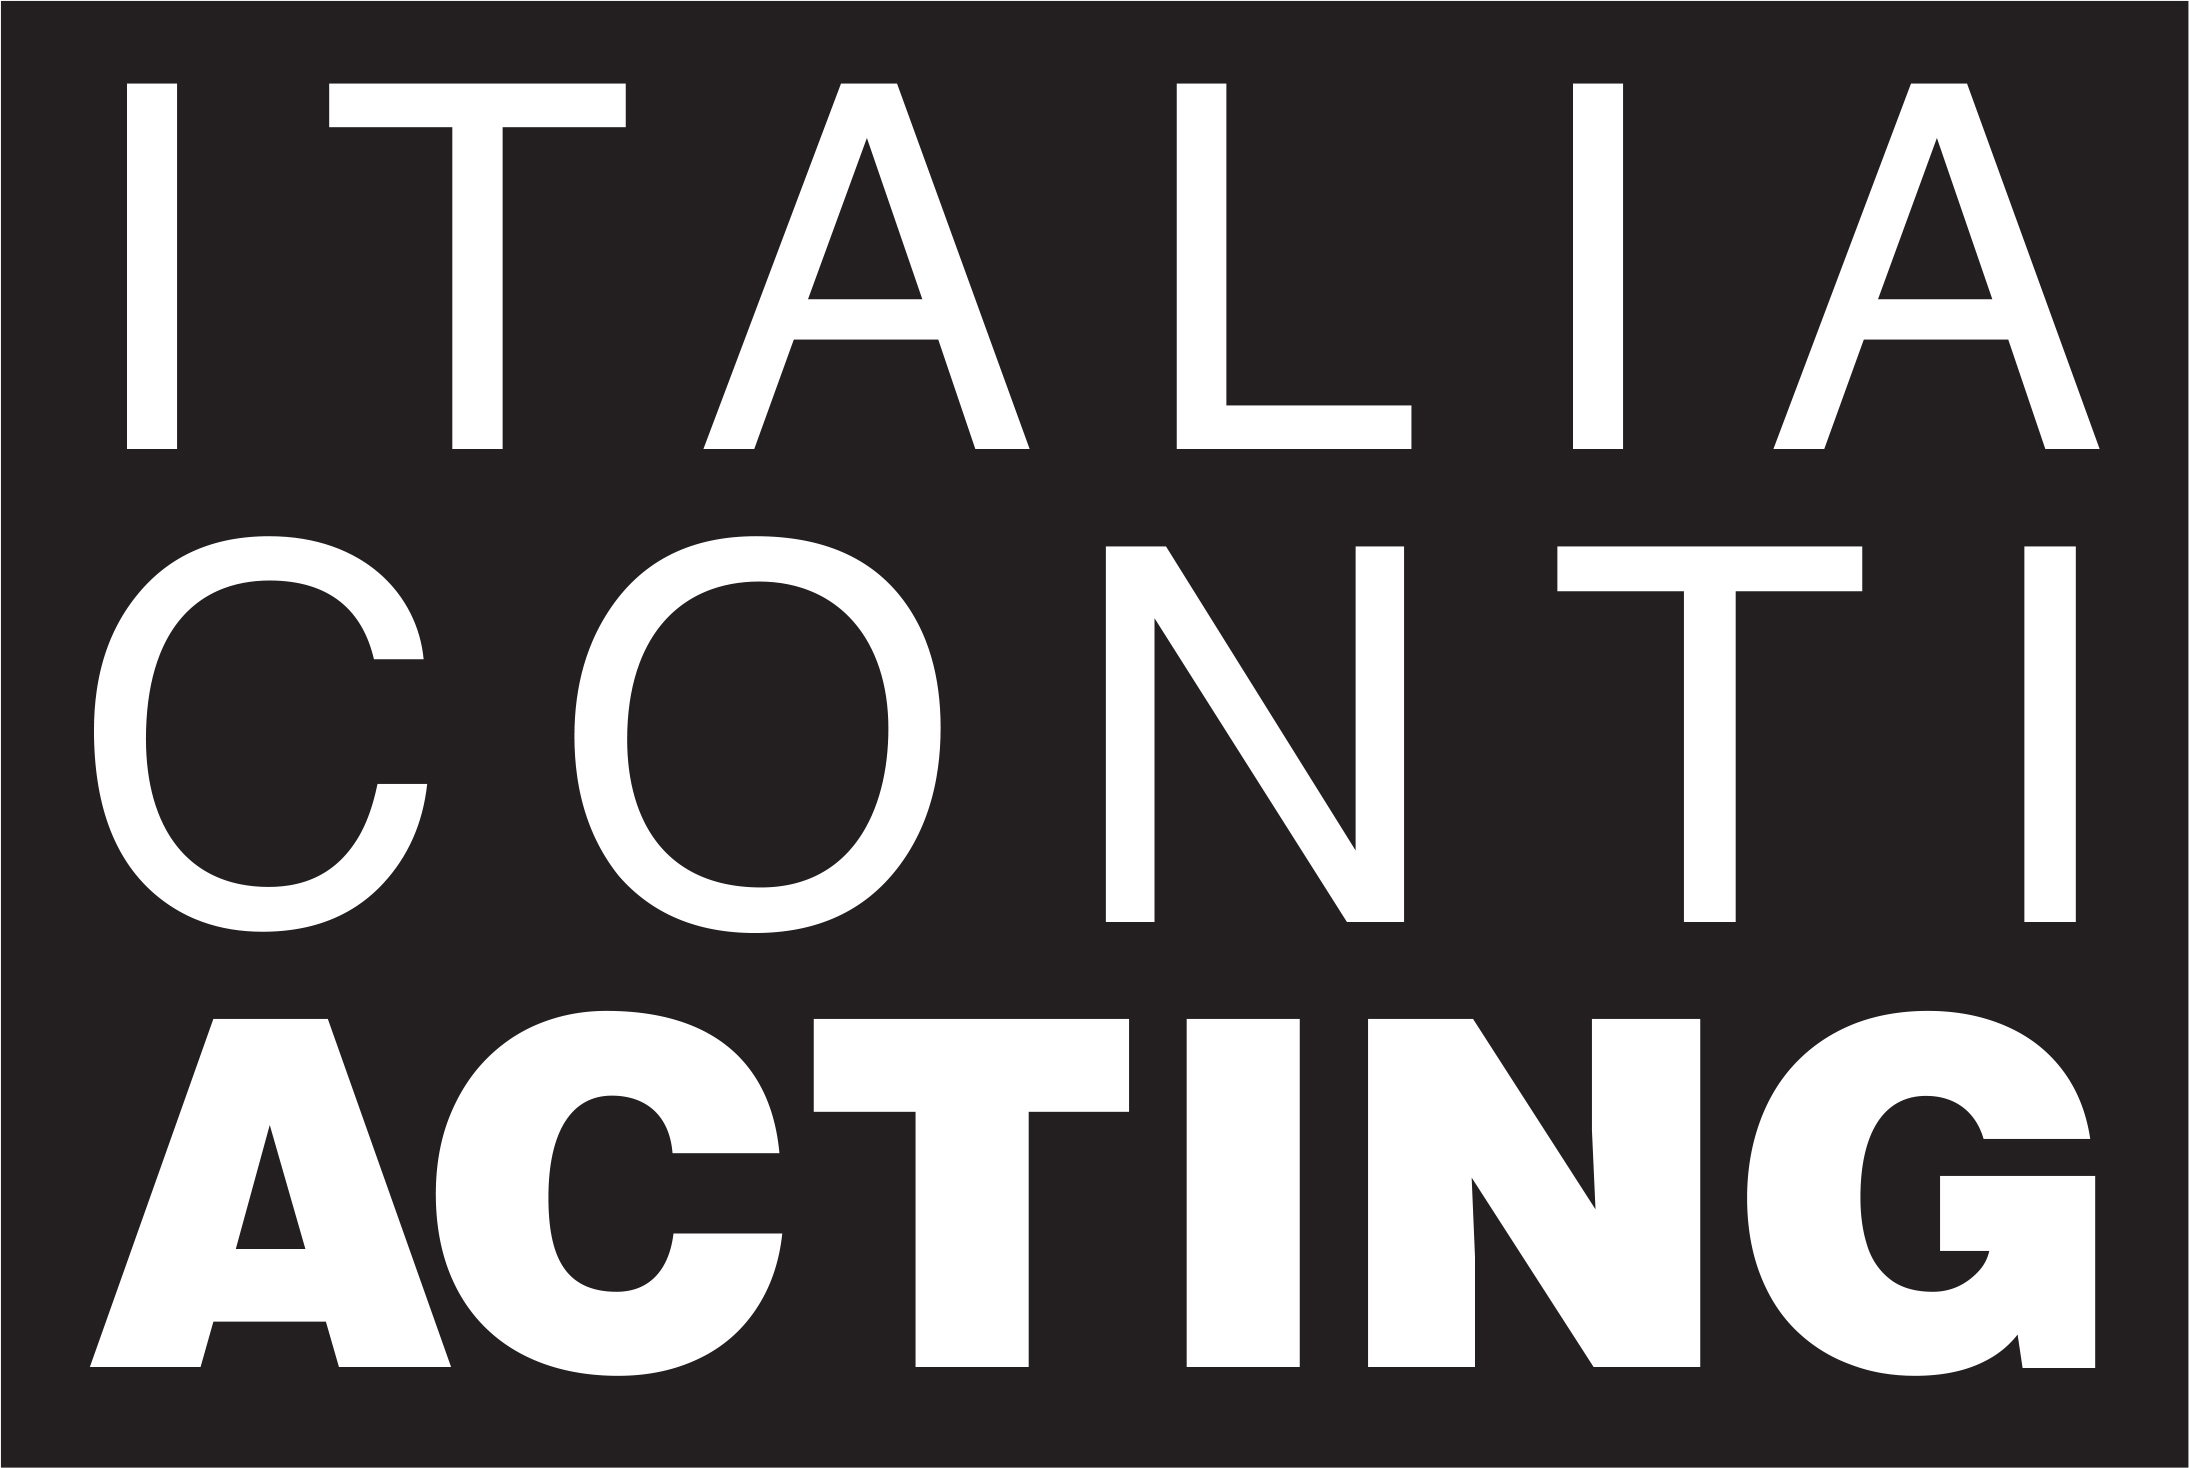 Italia Conti Acting logo